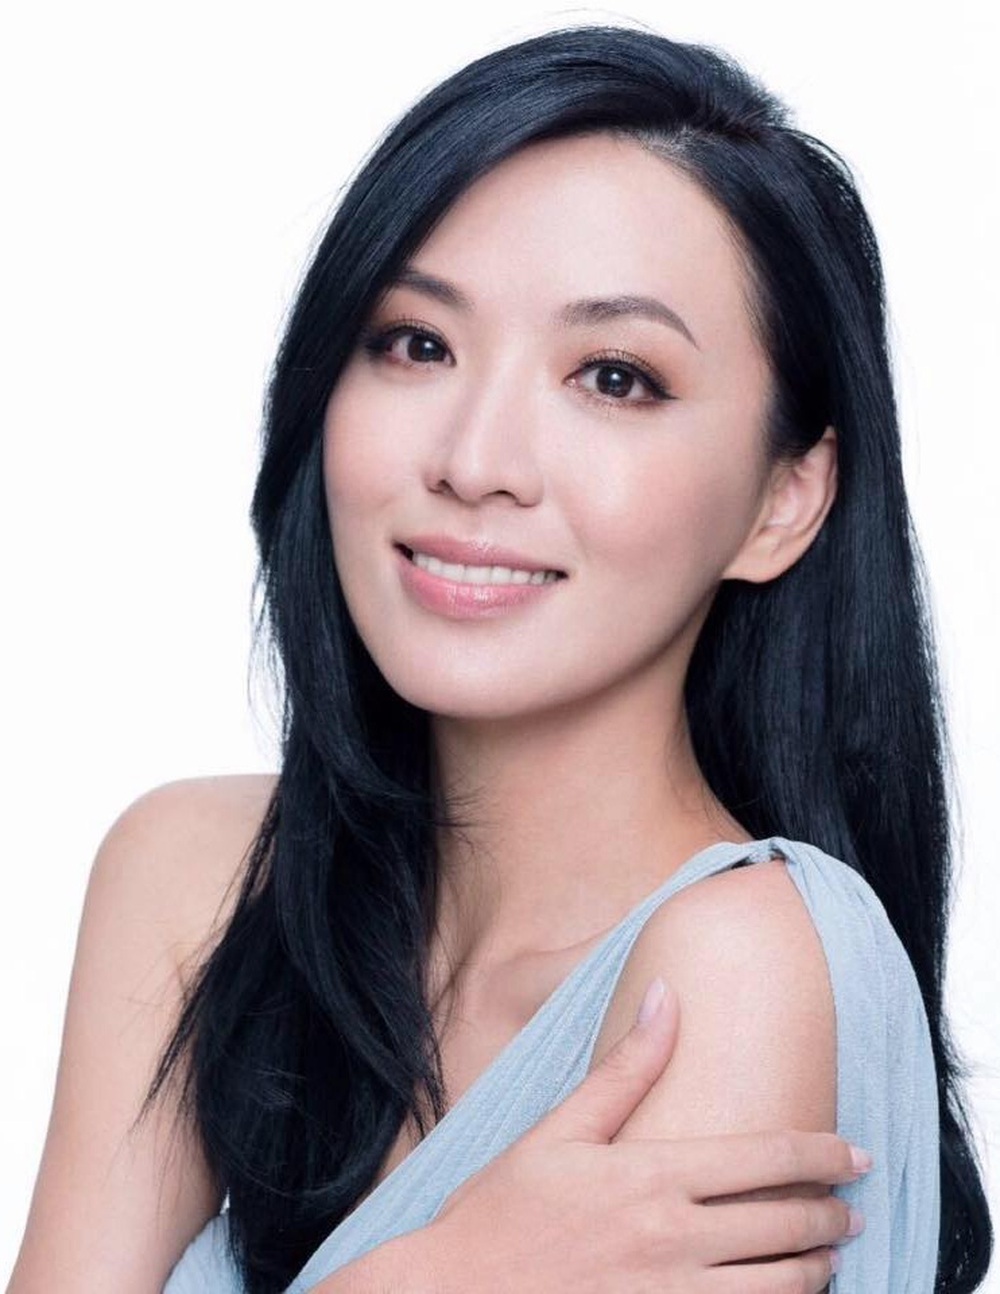 Hoa hậu châu Á nổi danh TVB ly dị vì hôn nhân thiếu lửa, tuổi U50 vẫn sở hữu nhan sắc nóng bỏng  - Ảnh 3.